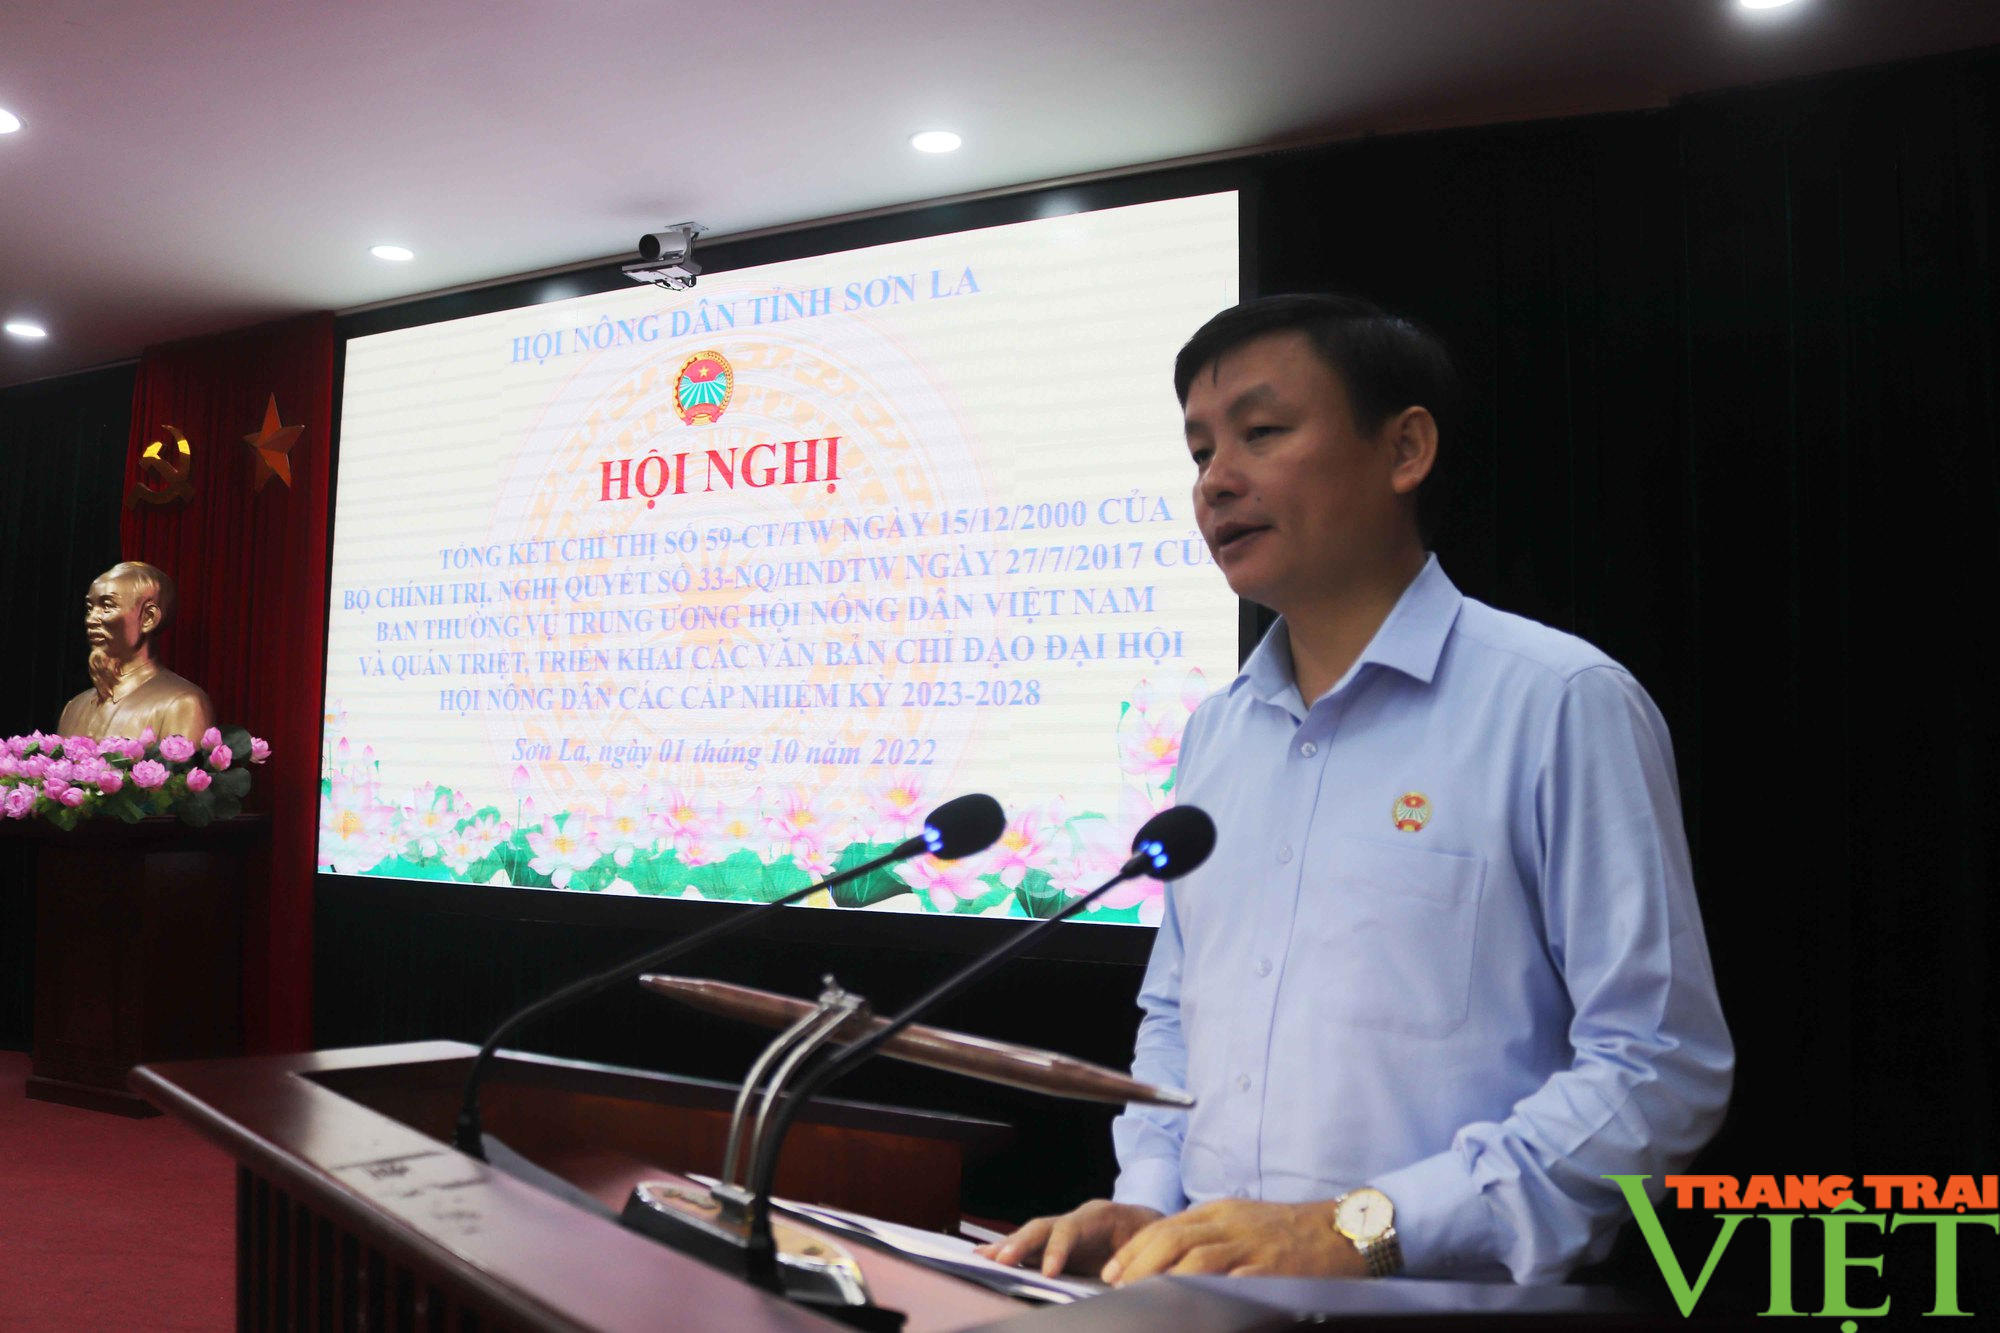 Hội Nông dân tỉnh Sơn La: Tổng kết 20 năm thực hiện Chỉ thị số 59/2000 của Bộ Chính trị - Ảnh 3.